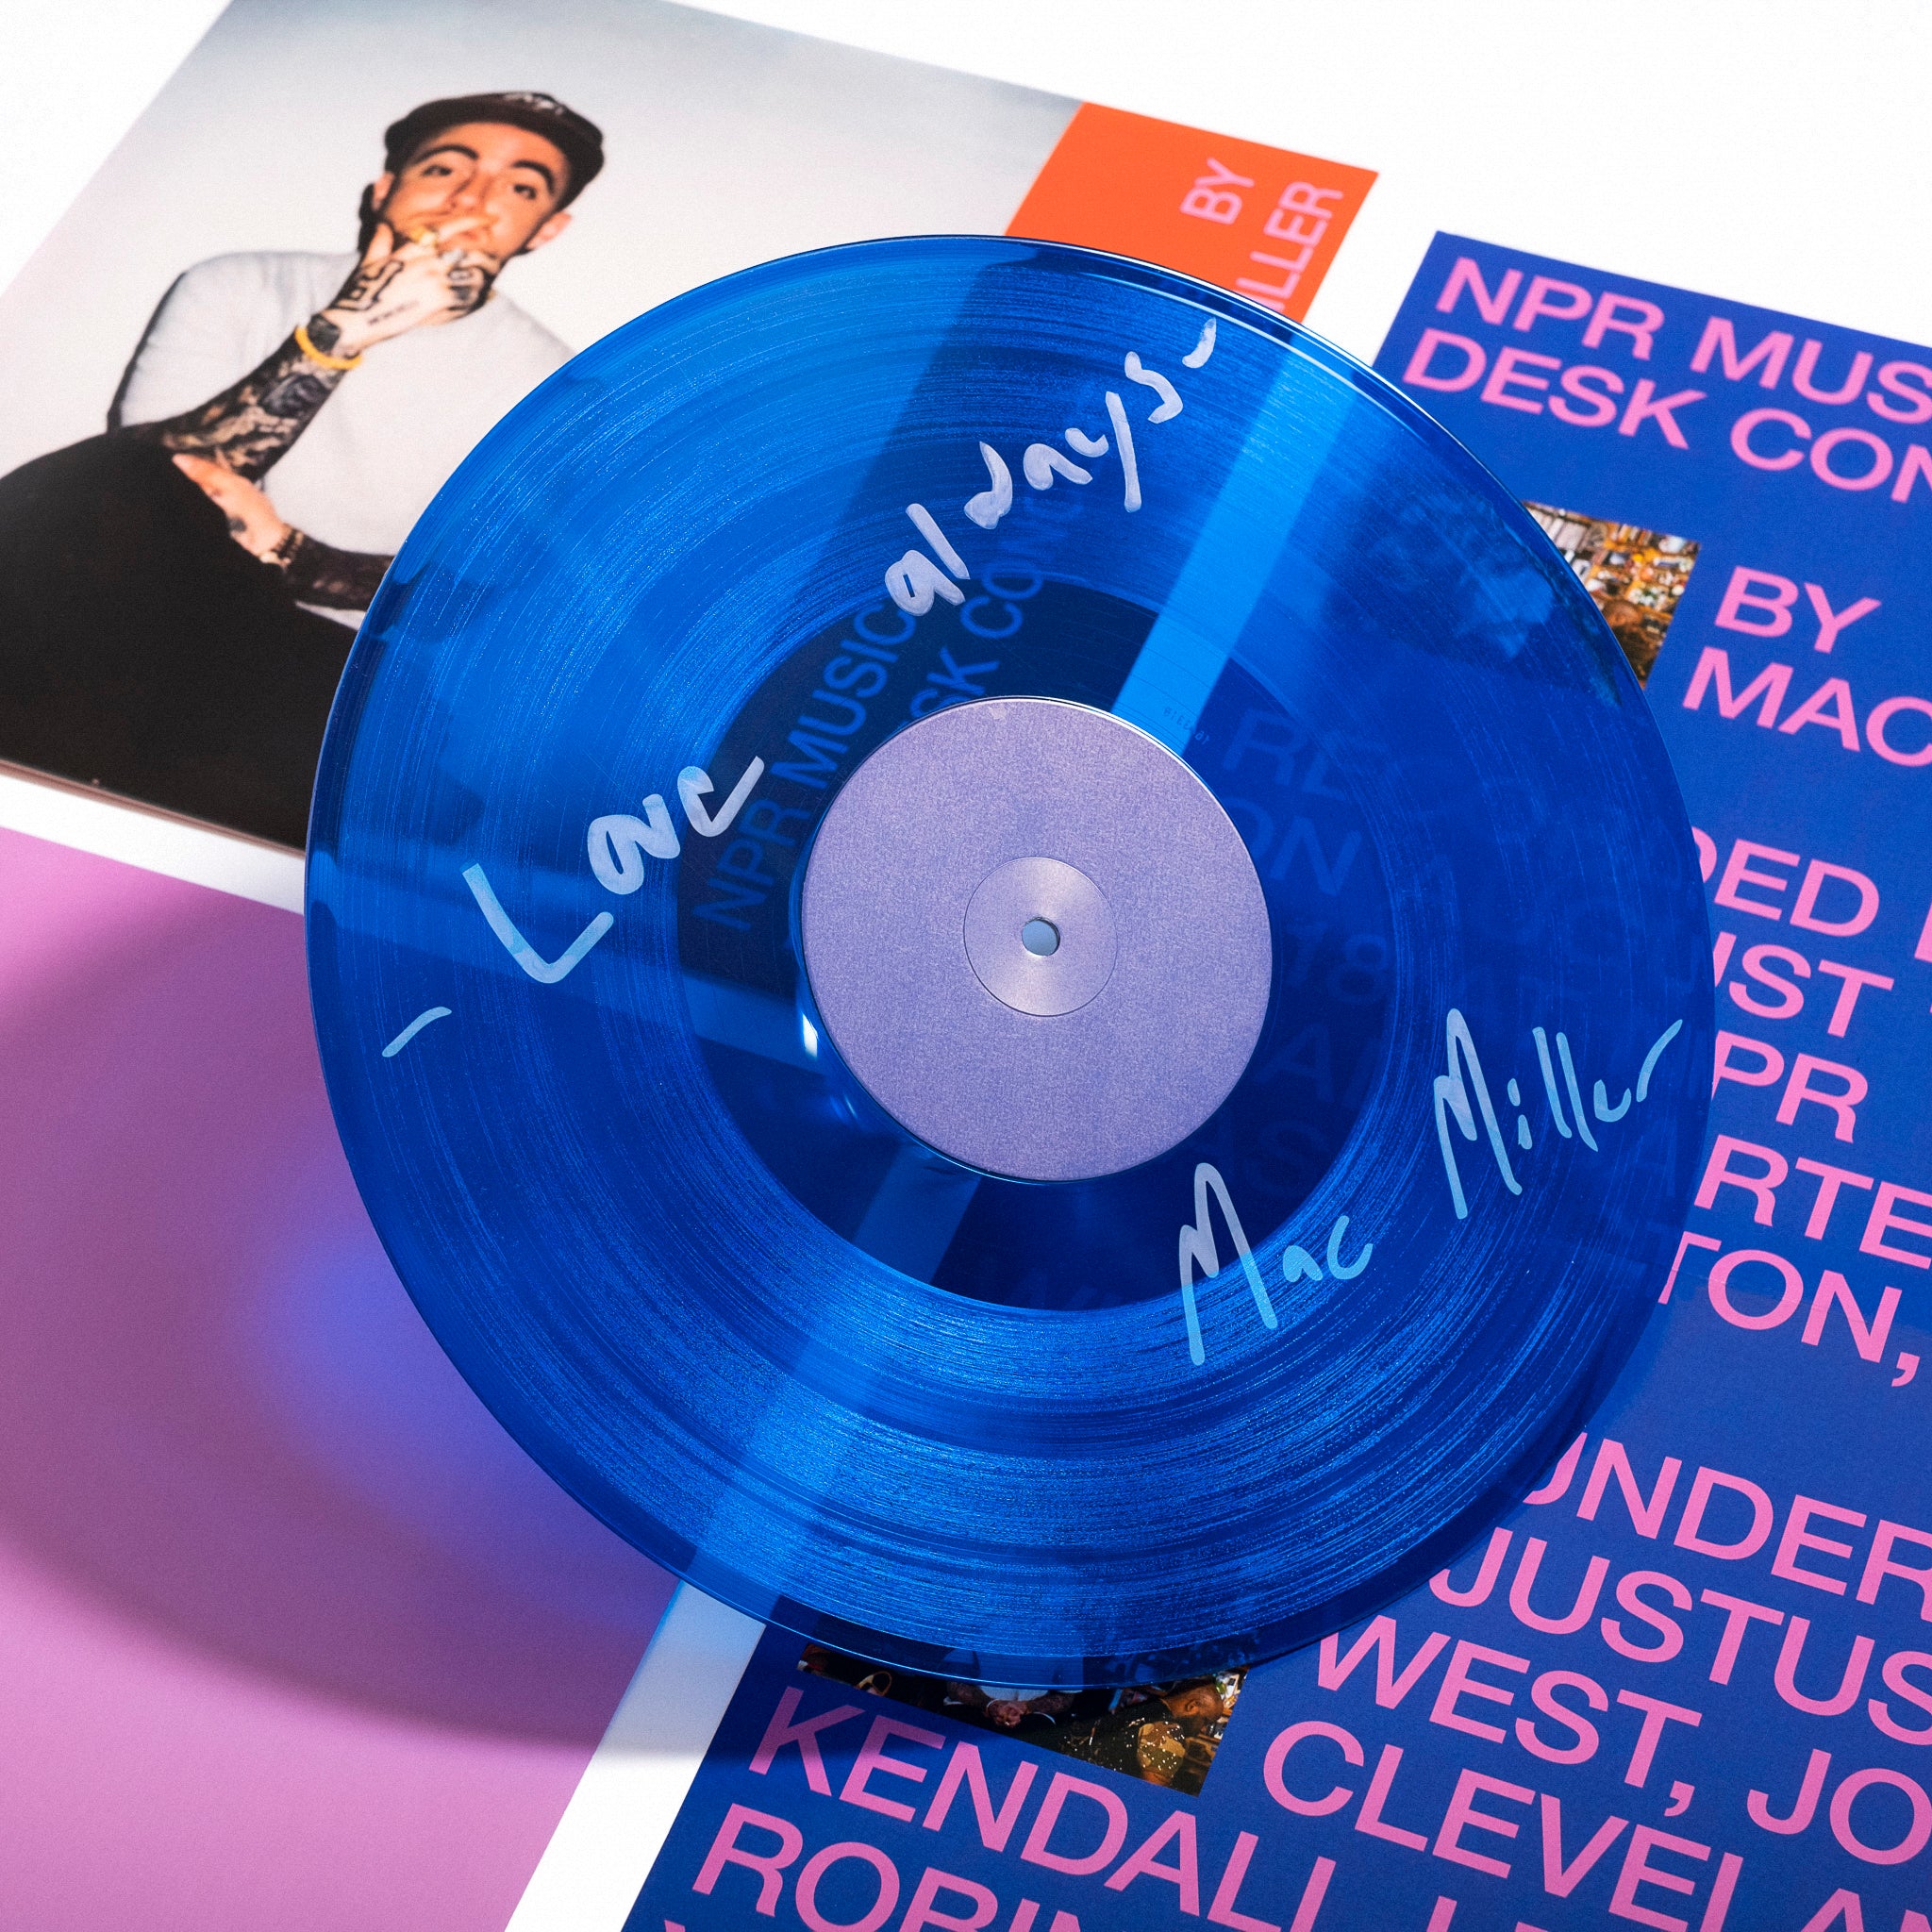 Order Mac Miller - NPR Music Tiny Desk Concert (Translucent Blue Vinyl with B-side Etching)